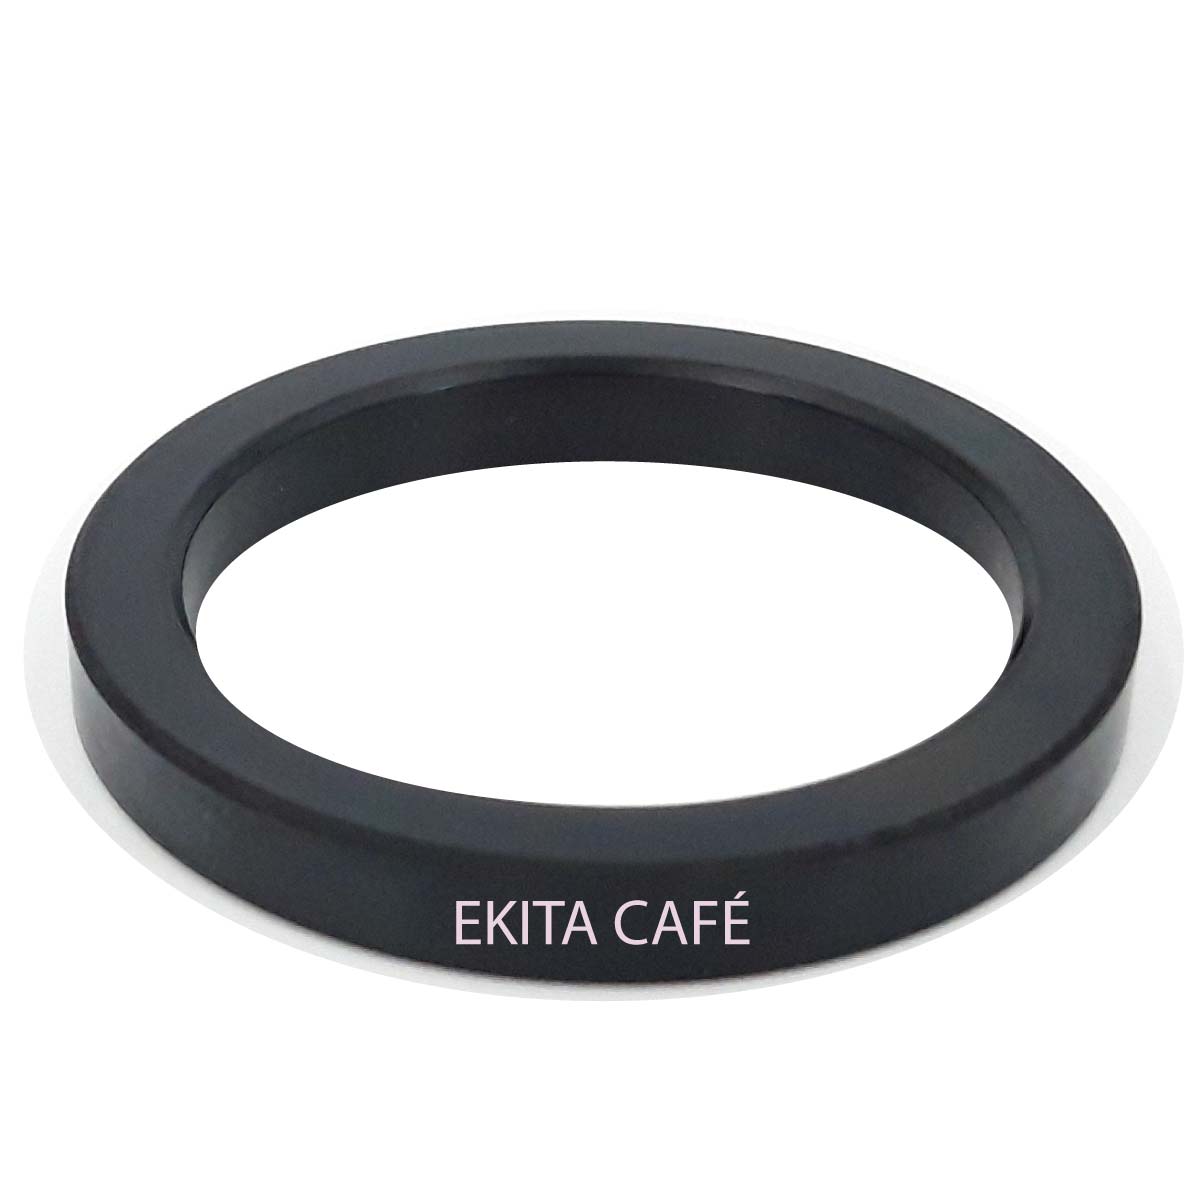 Joint de porte filtre 8,5mm pour machine à café Conti, Faema